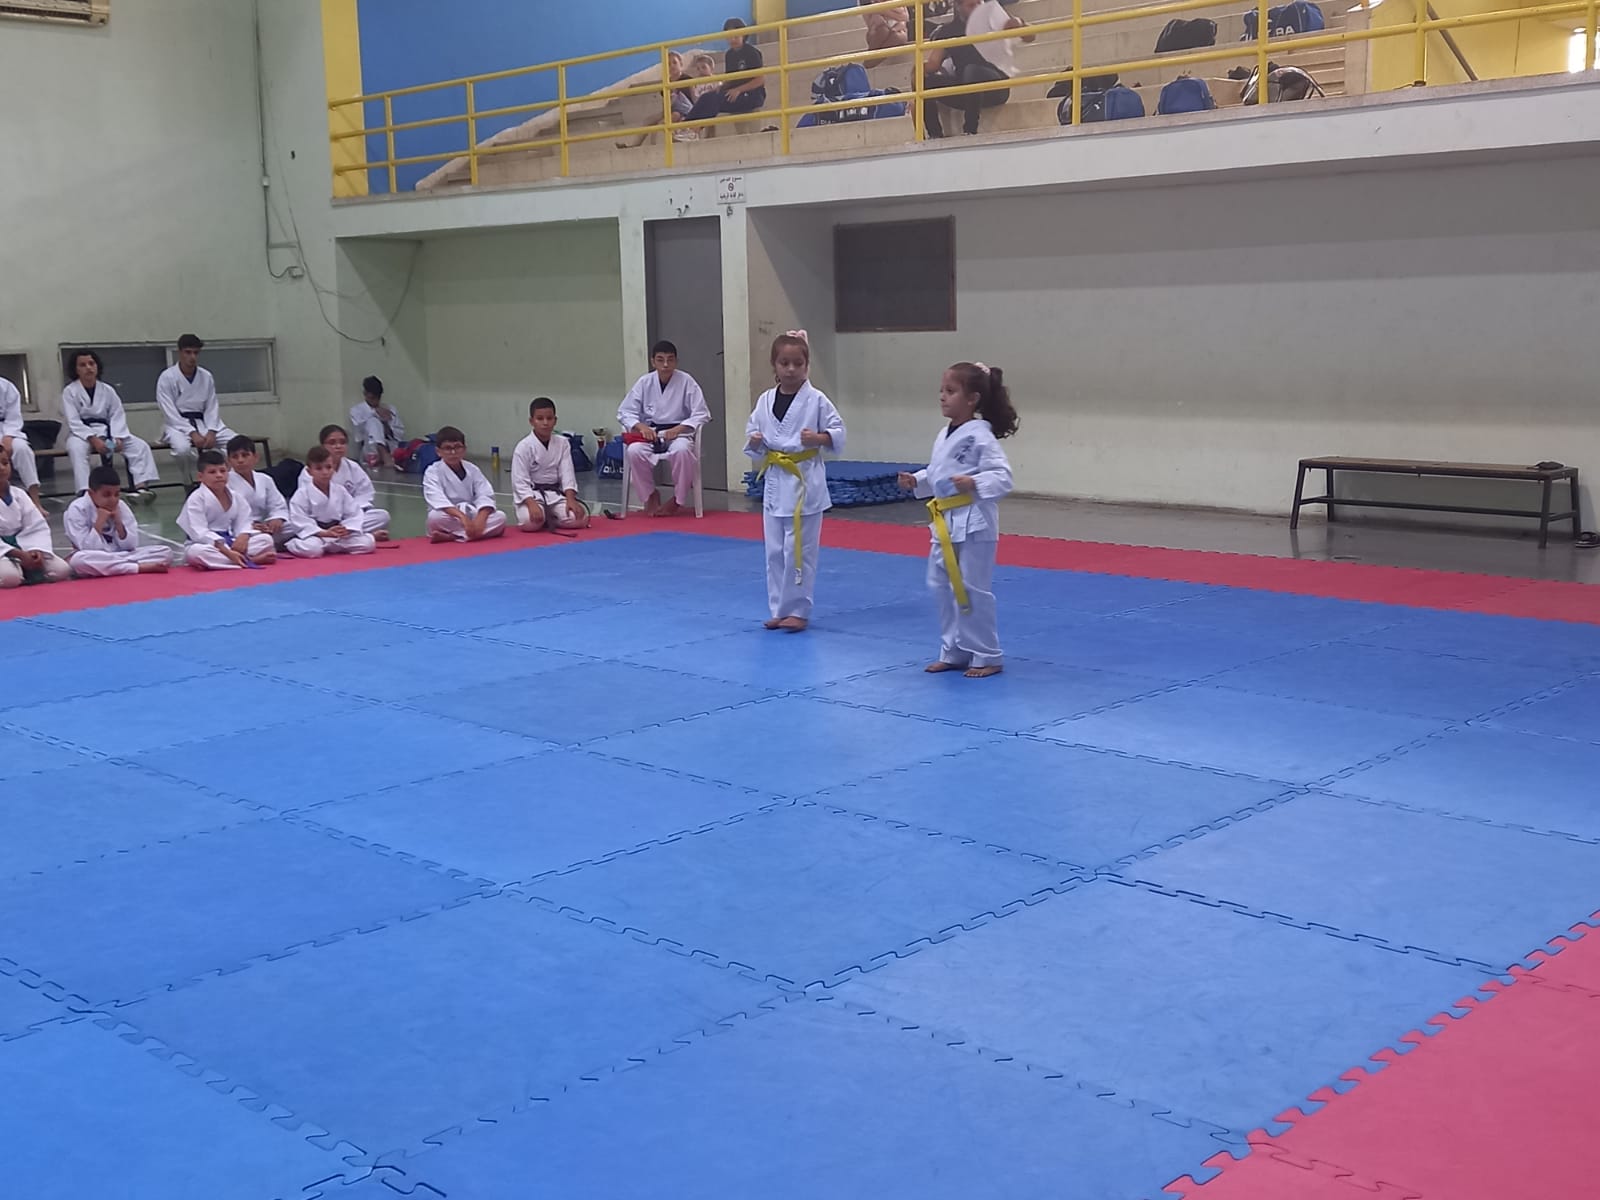 مدرسة hosni kai karate اختتمت اليوم معسكرها الصيفي السنوي